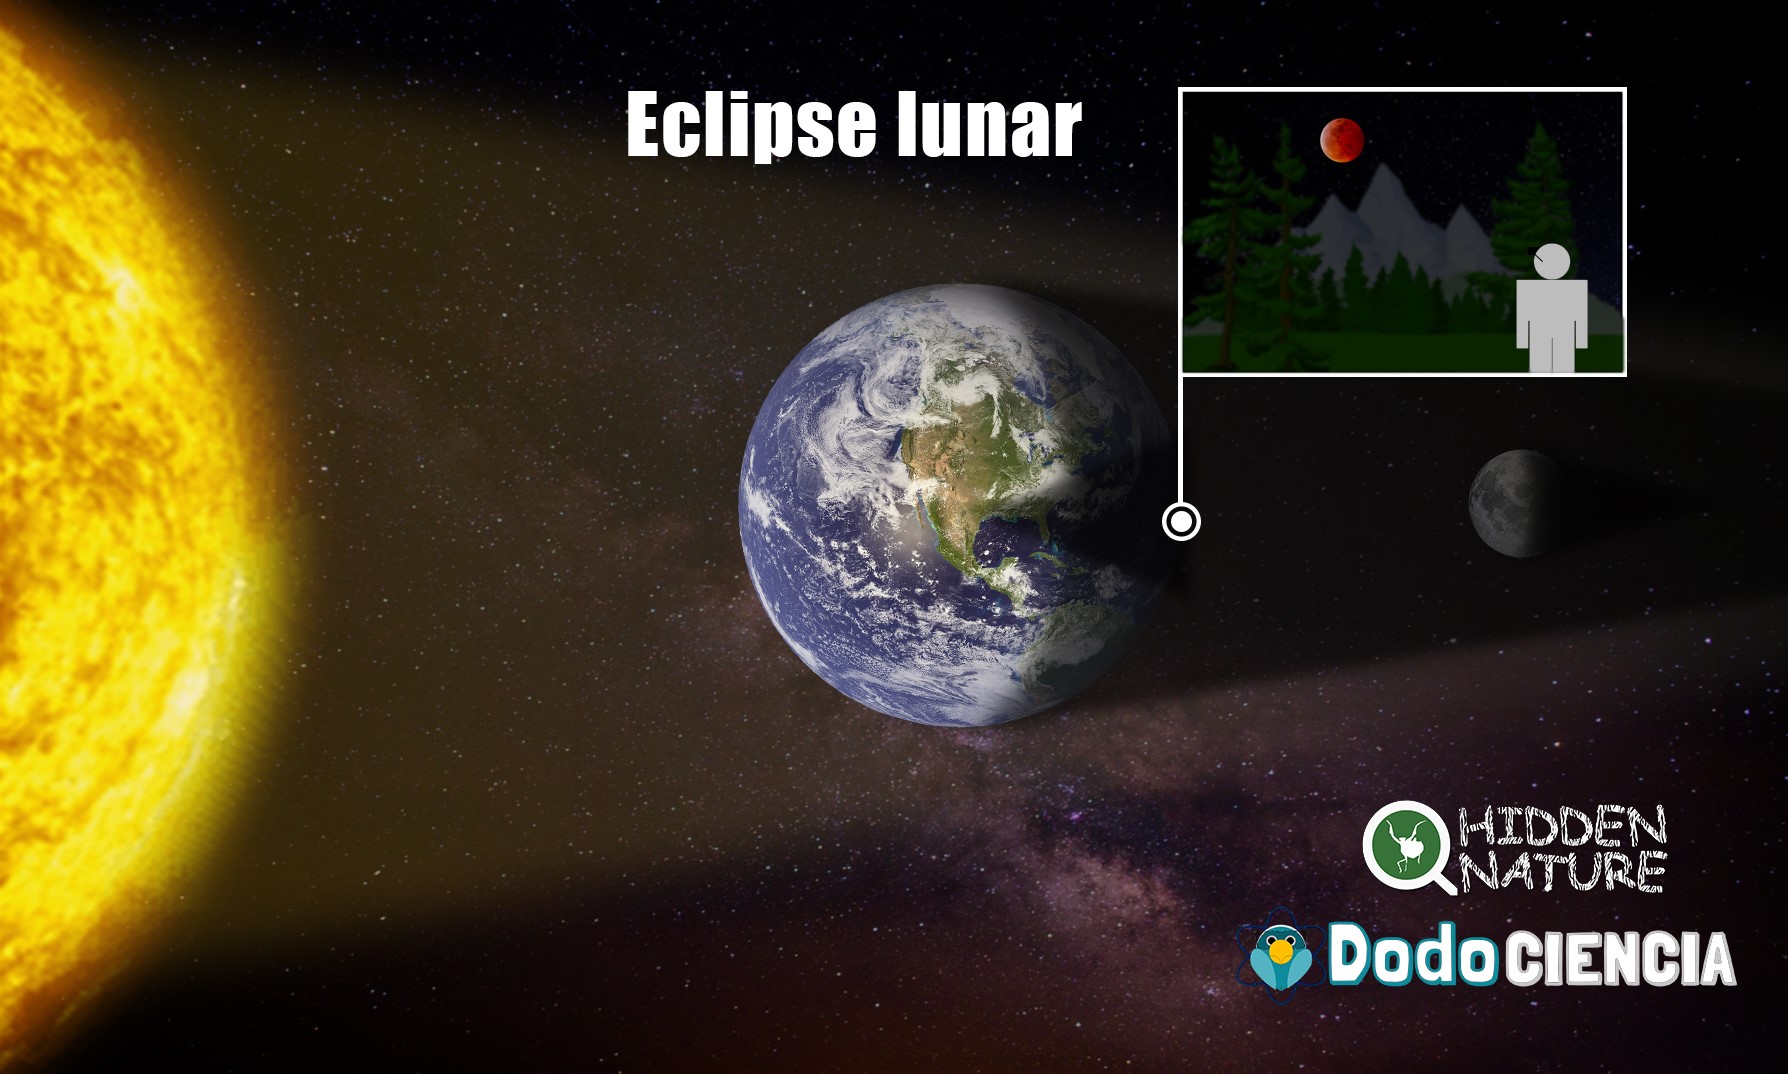 Imagen que muestra qué es un eclipse de Luna, o eclipse lunar, donde se ve a la Tierra que se encuentra entre el Sol y la luna